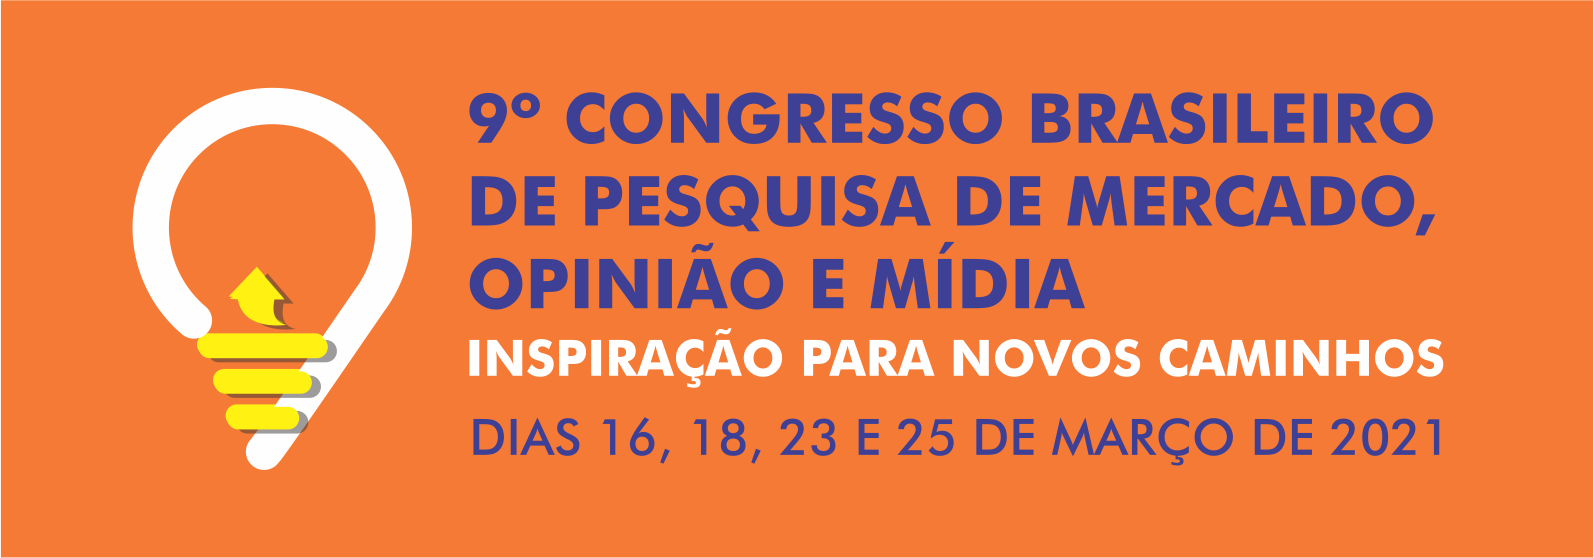 9º Congresso Brasileiro de Pesquisa